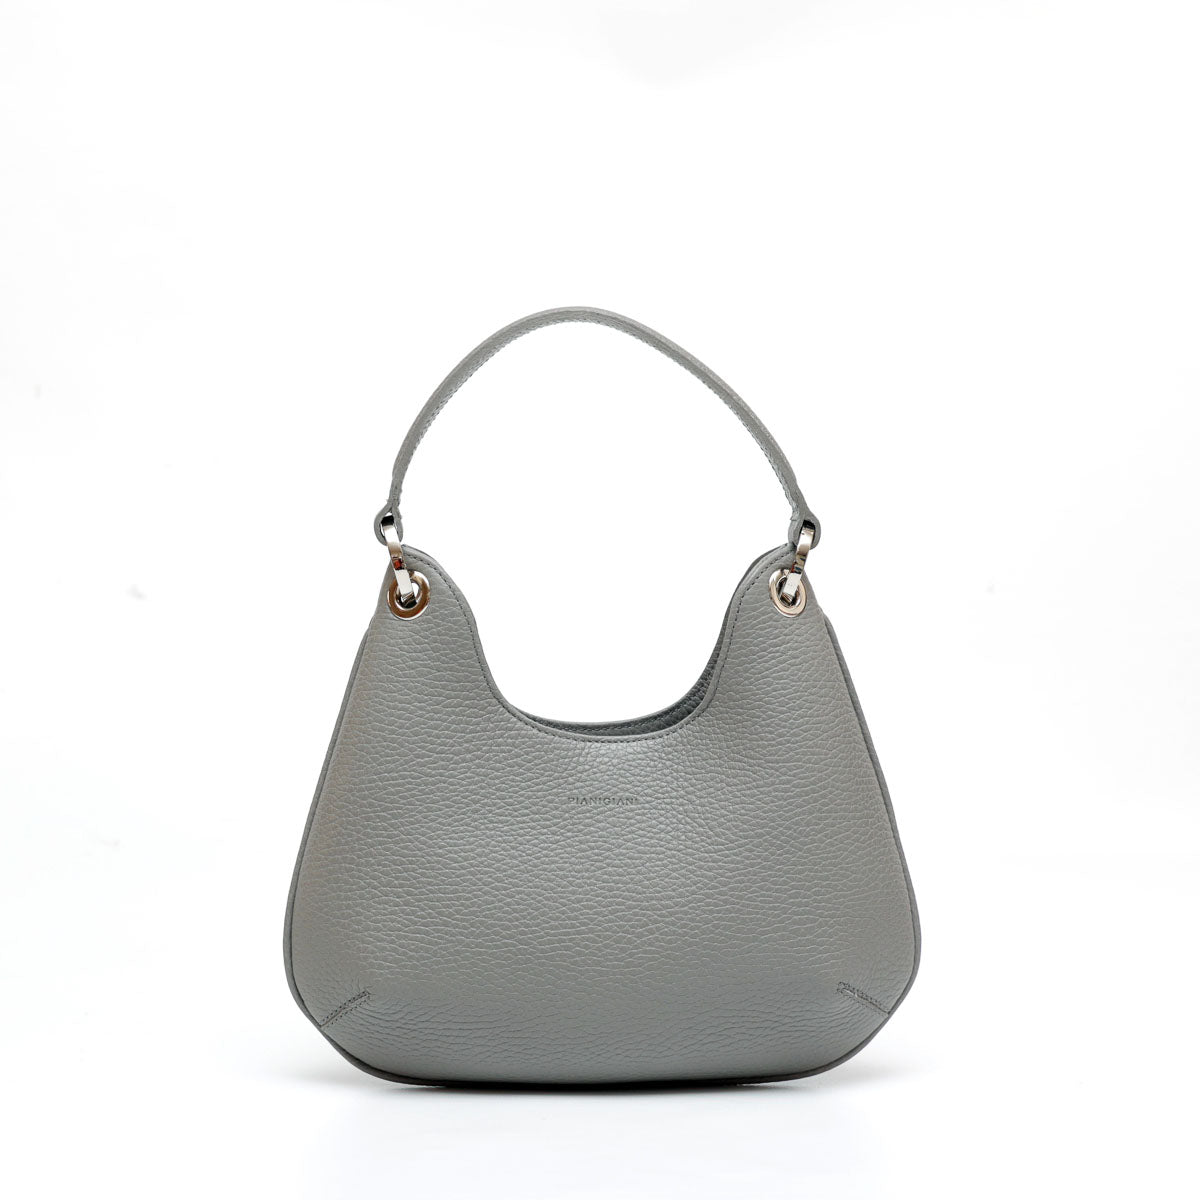 Mini  Lou bag - borsa da donna in pelle grigia, modello a mano con tracolla by Pianigiani